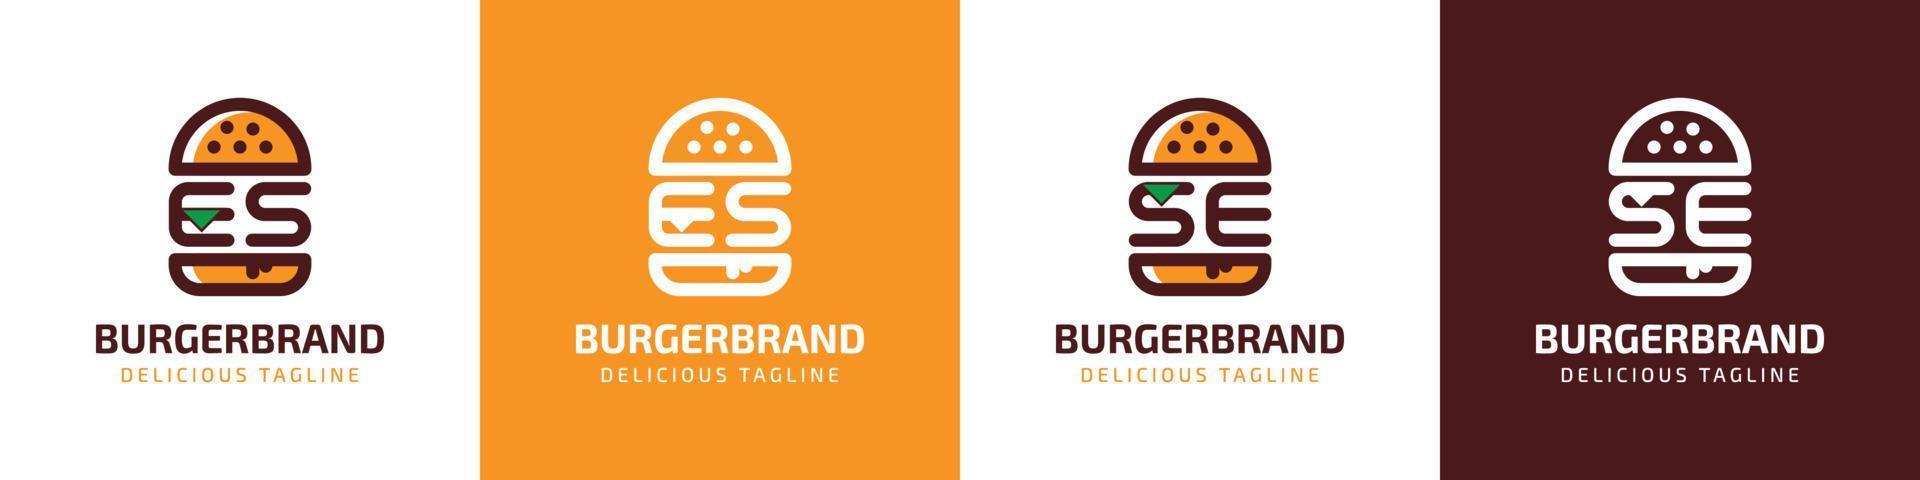 letra es y se hamburguesa logo, adecuado para ninguna negocio relacionado a hamburguesa con es o se iniciales. vector